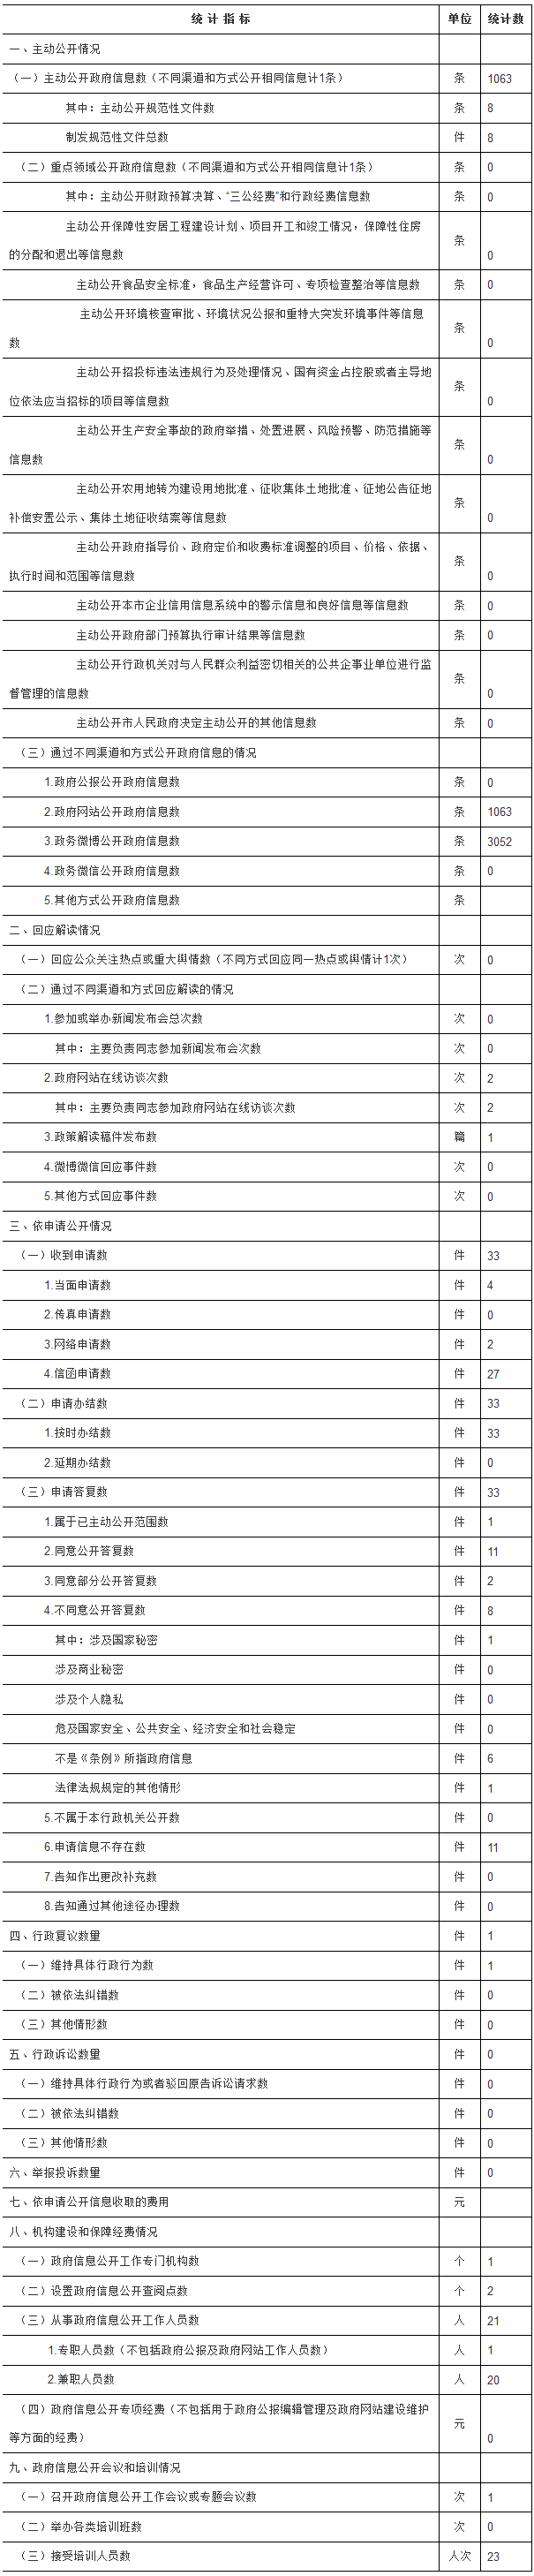 北京市民防局政府信息公开情况统计表(2017年度)